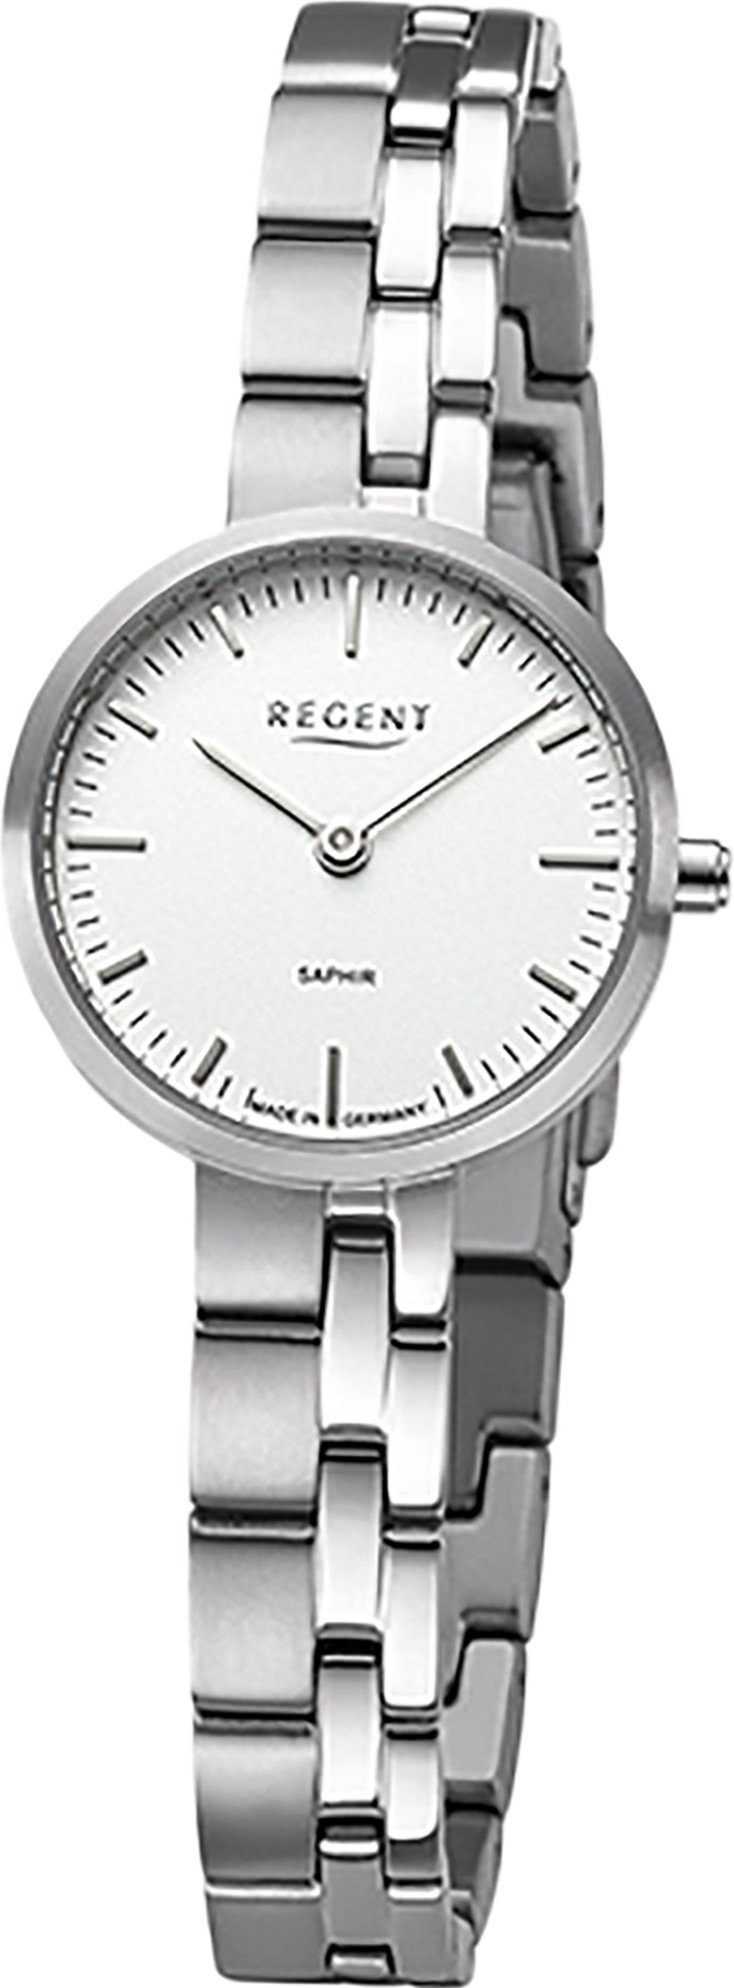 Armbanduhr Damen (ca. klein Titanbandarmband Analoganzeige, Regent Quarzuhr rund, 26mm), Regent Damen Armbanduhr